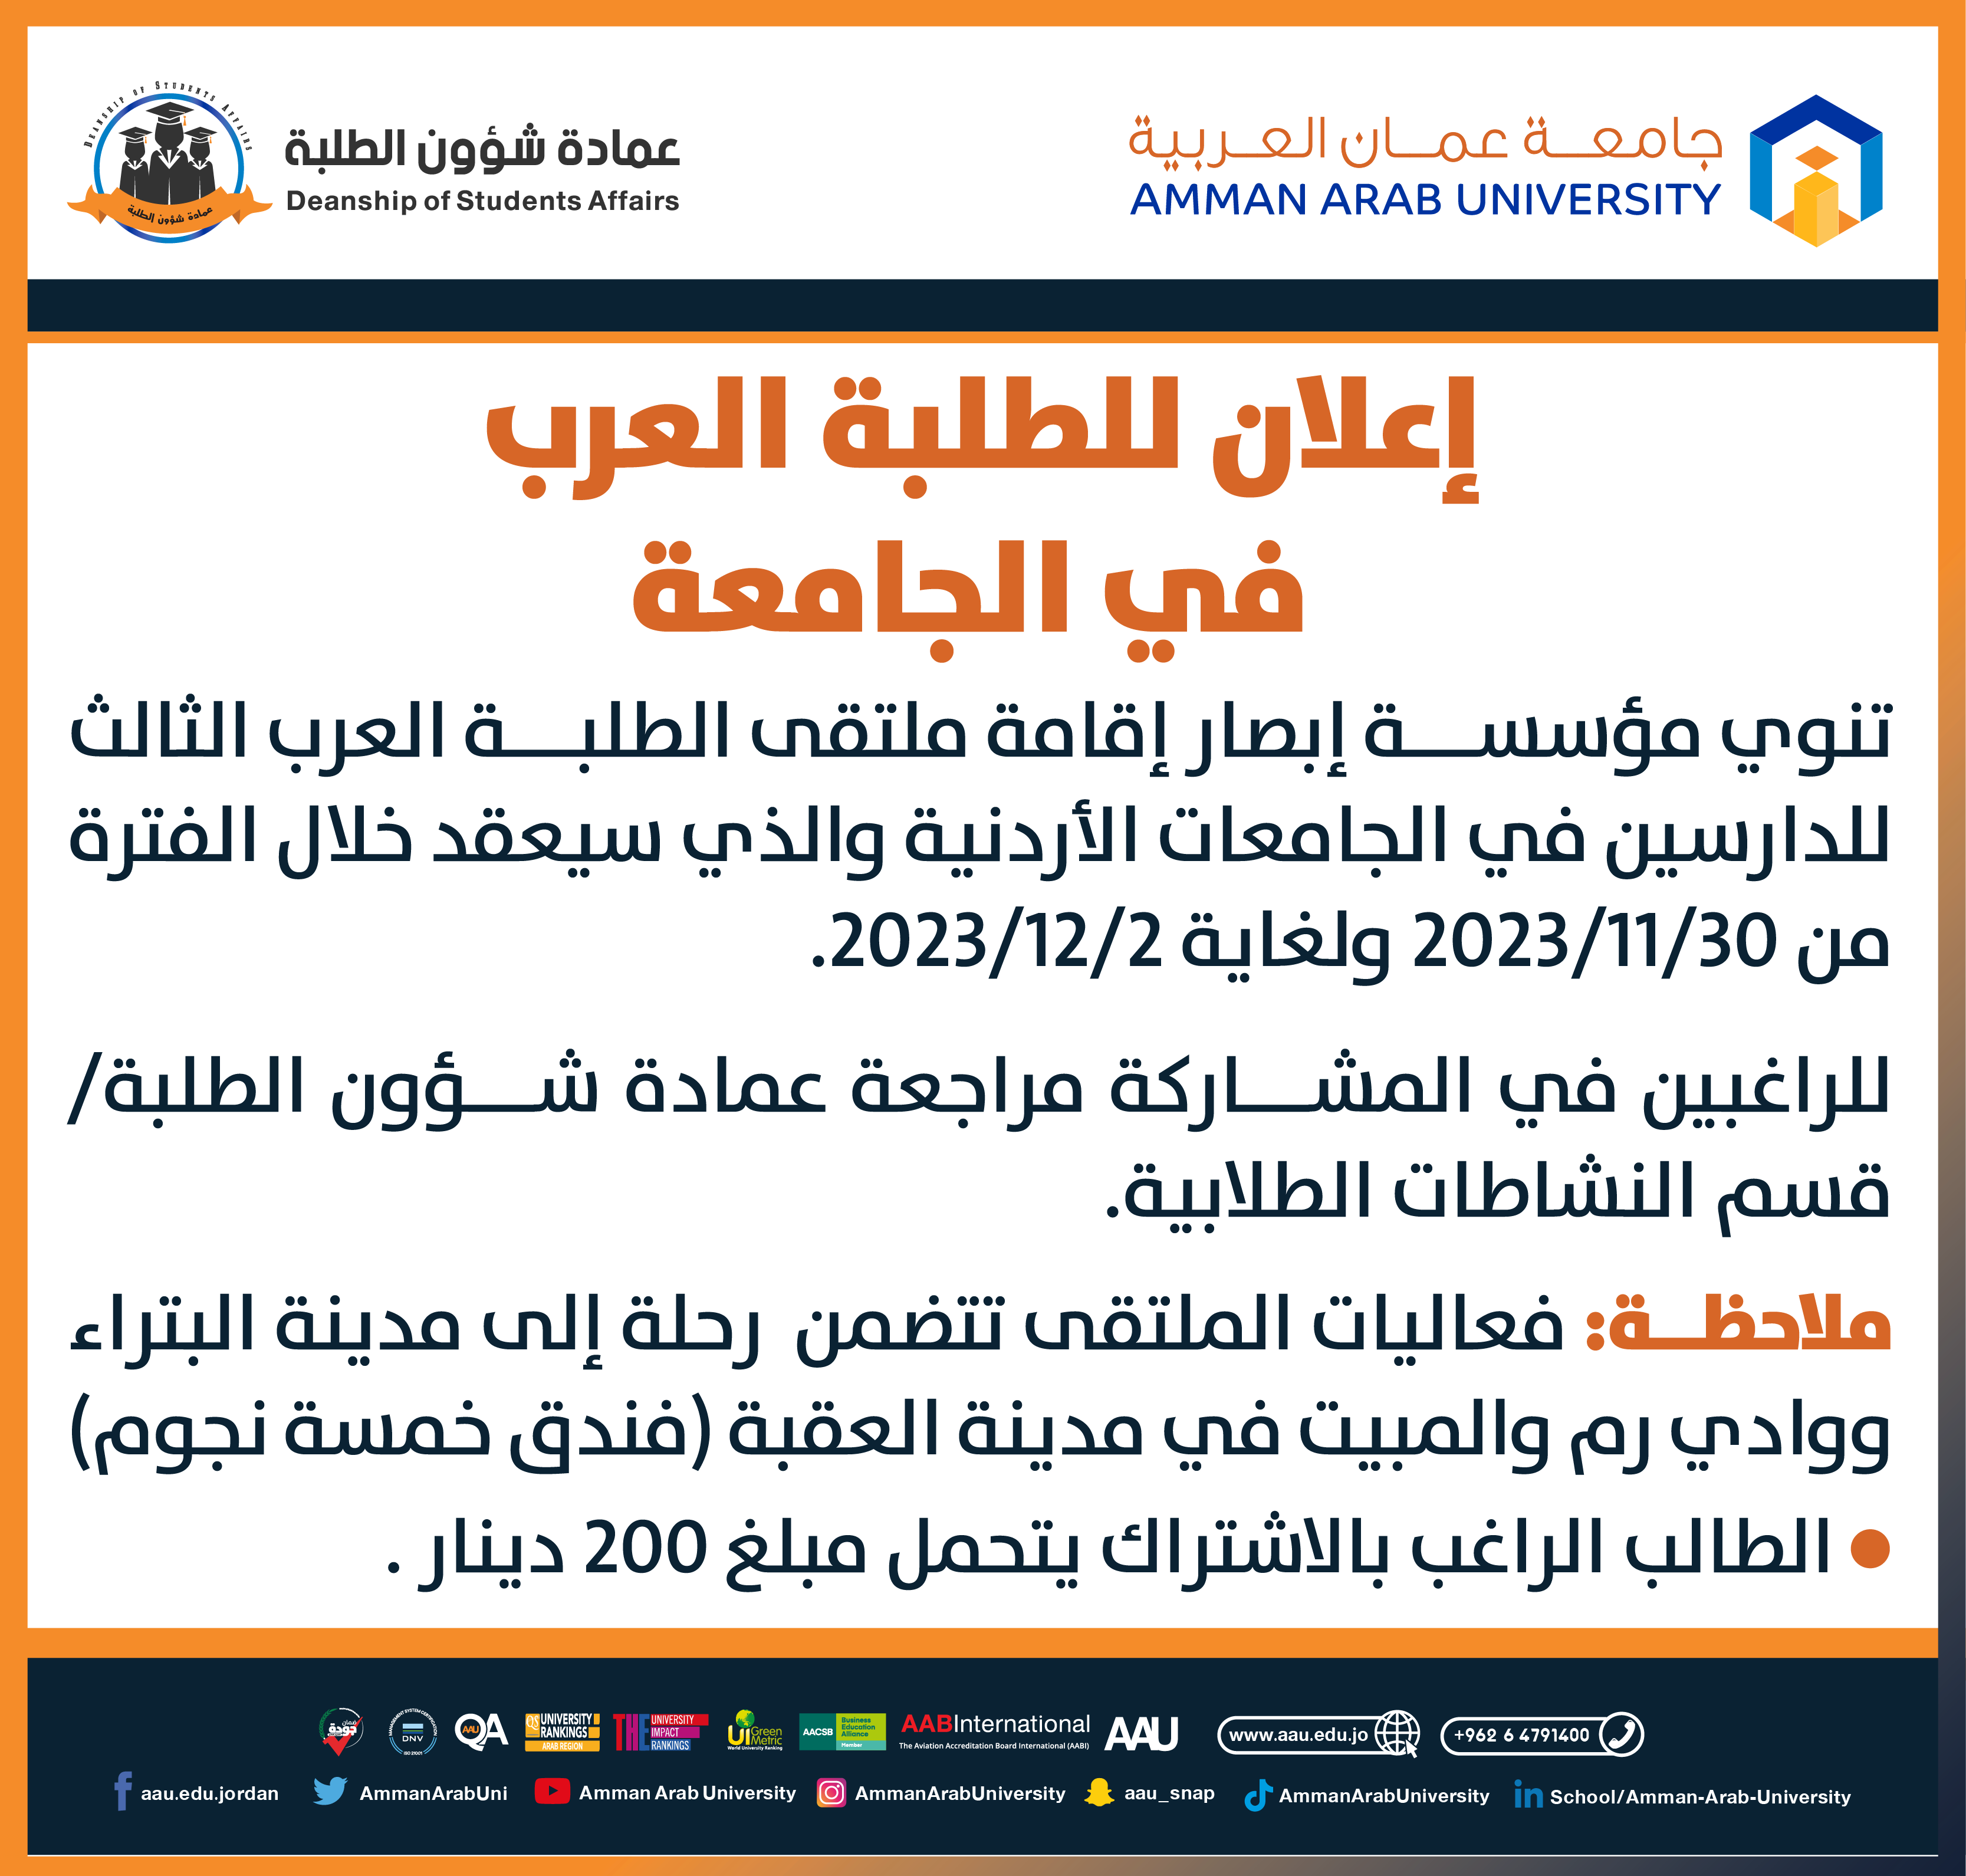 اعلان لملتقى الطلبة العرب الثالث للدراسين في الجامعات الأردنية